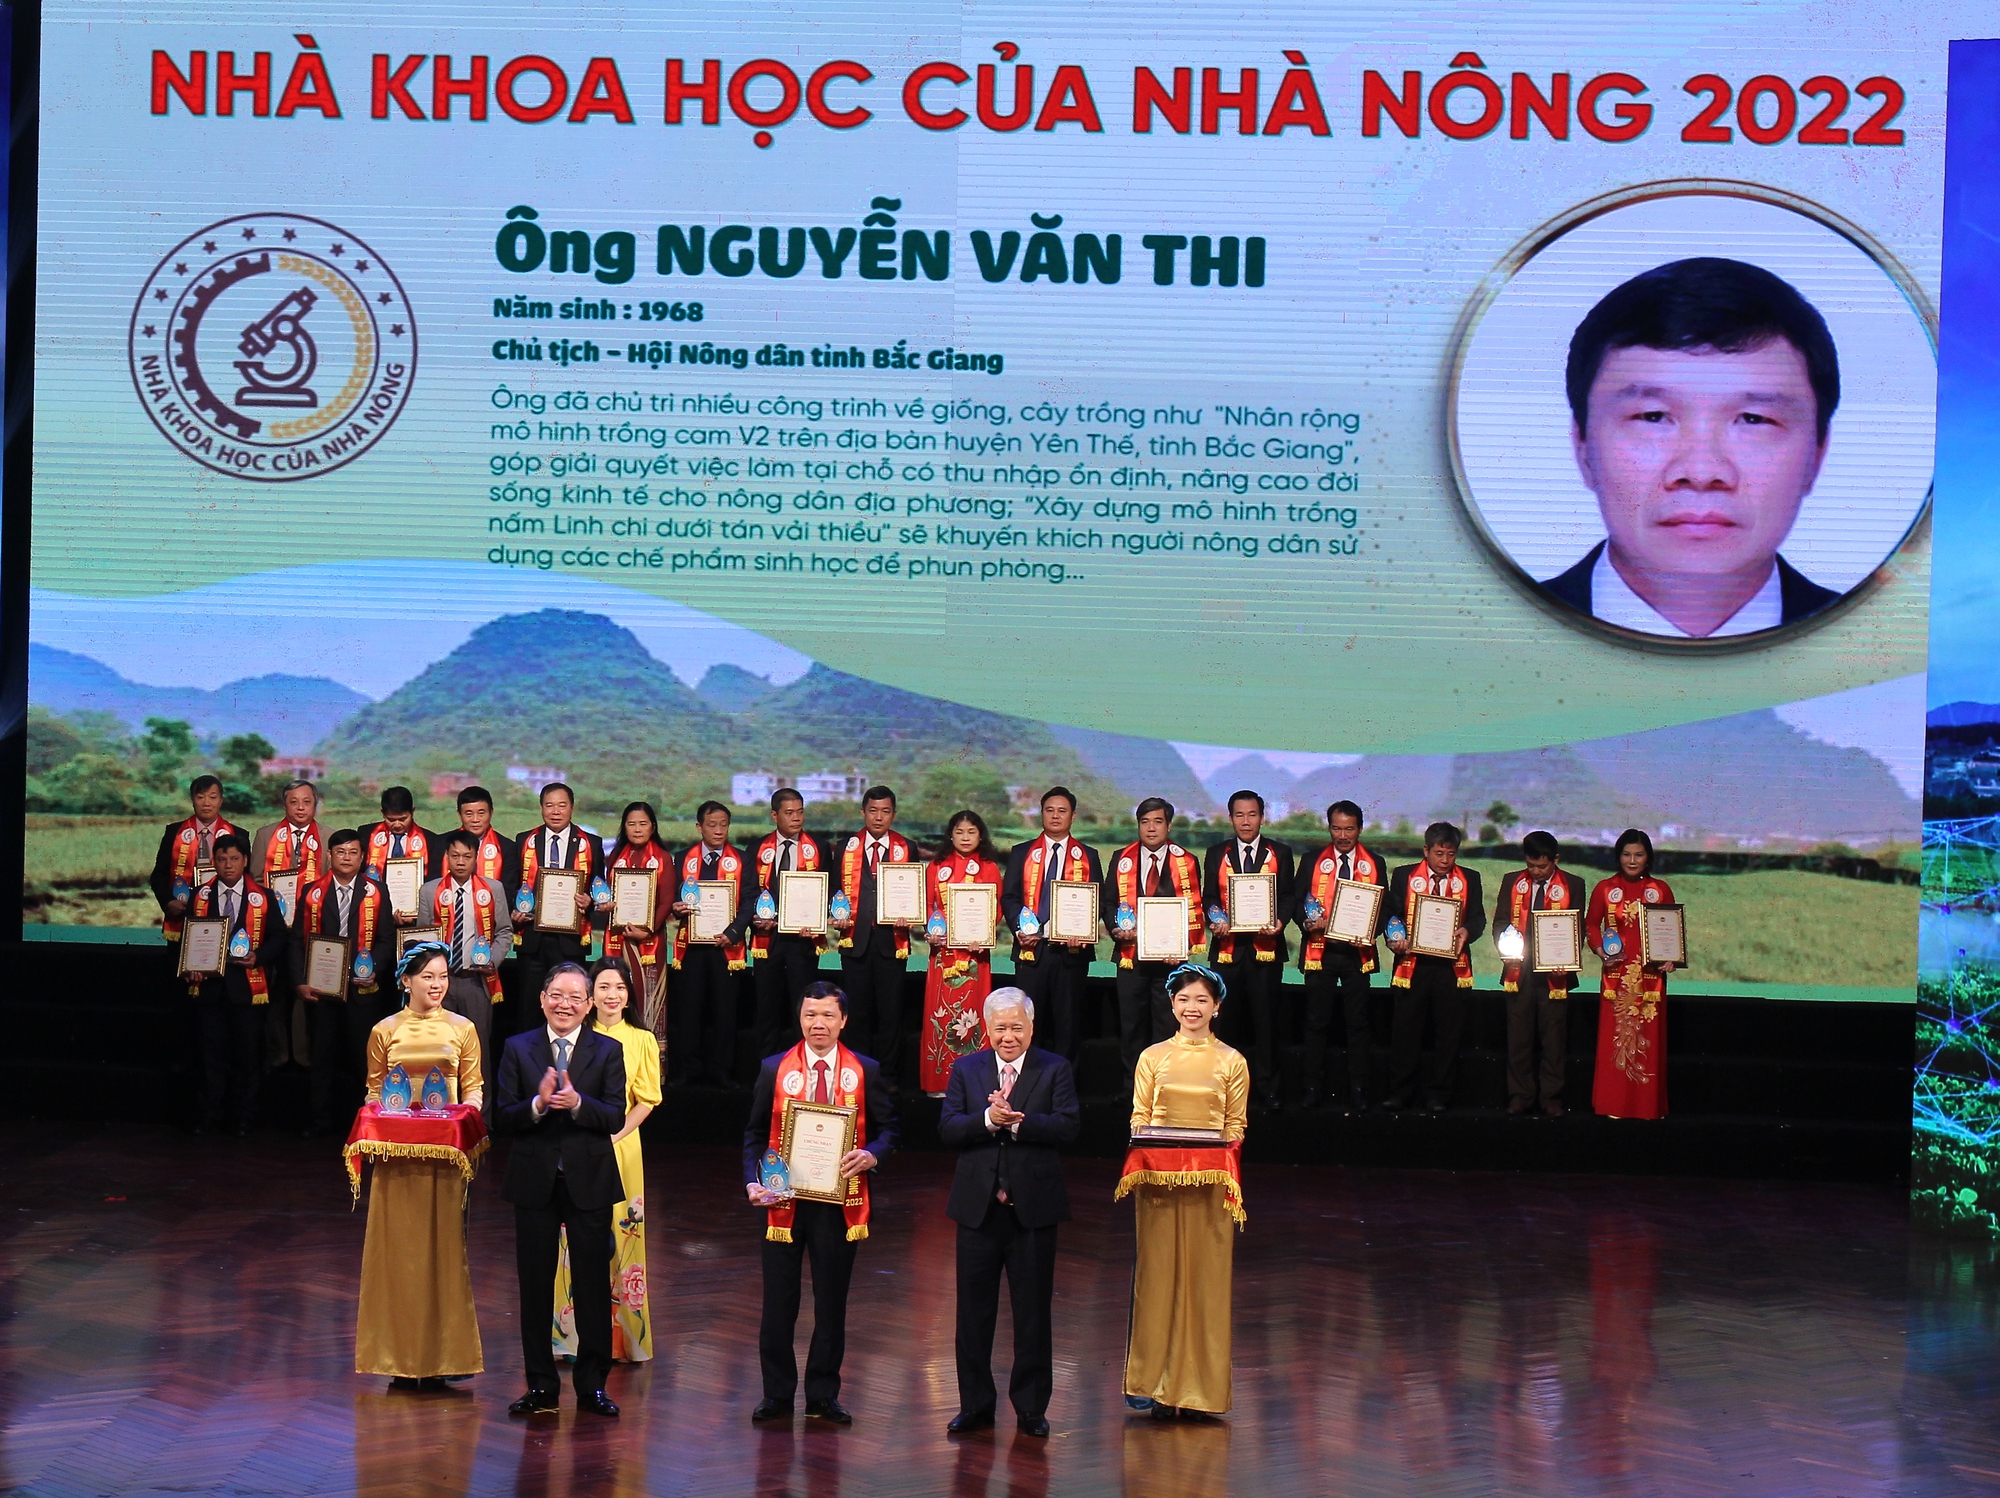 Chủ tịch Hội Nông dân tỉnh Bắc Giang Nguyễn Văn Thi được tôn vinh Nhà khoa học của nhà nông - Ảnh 1.